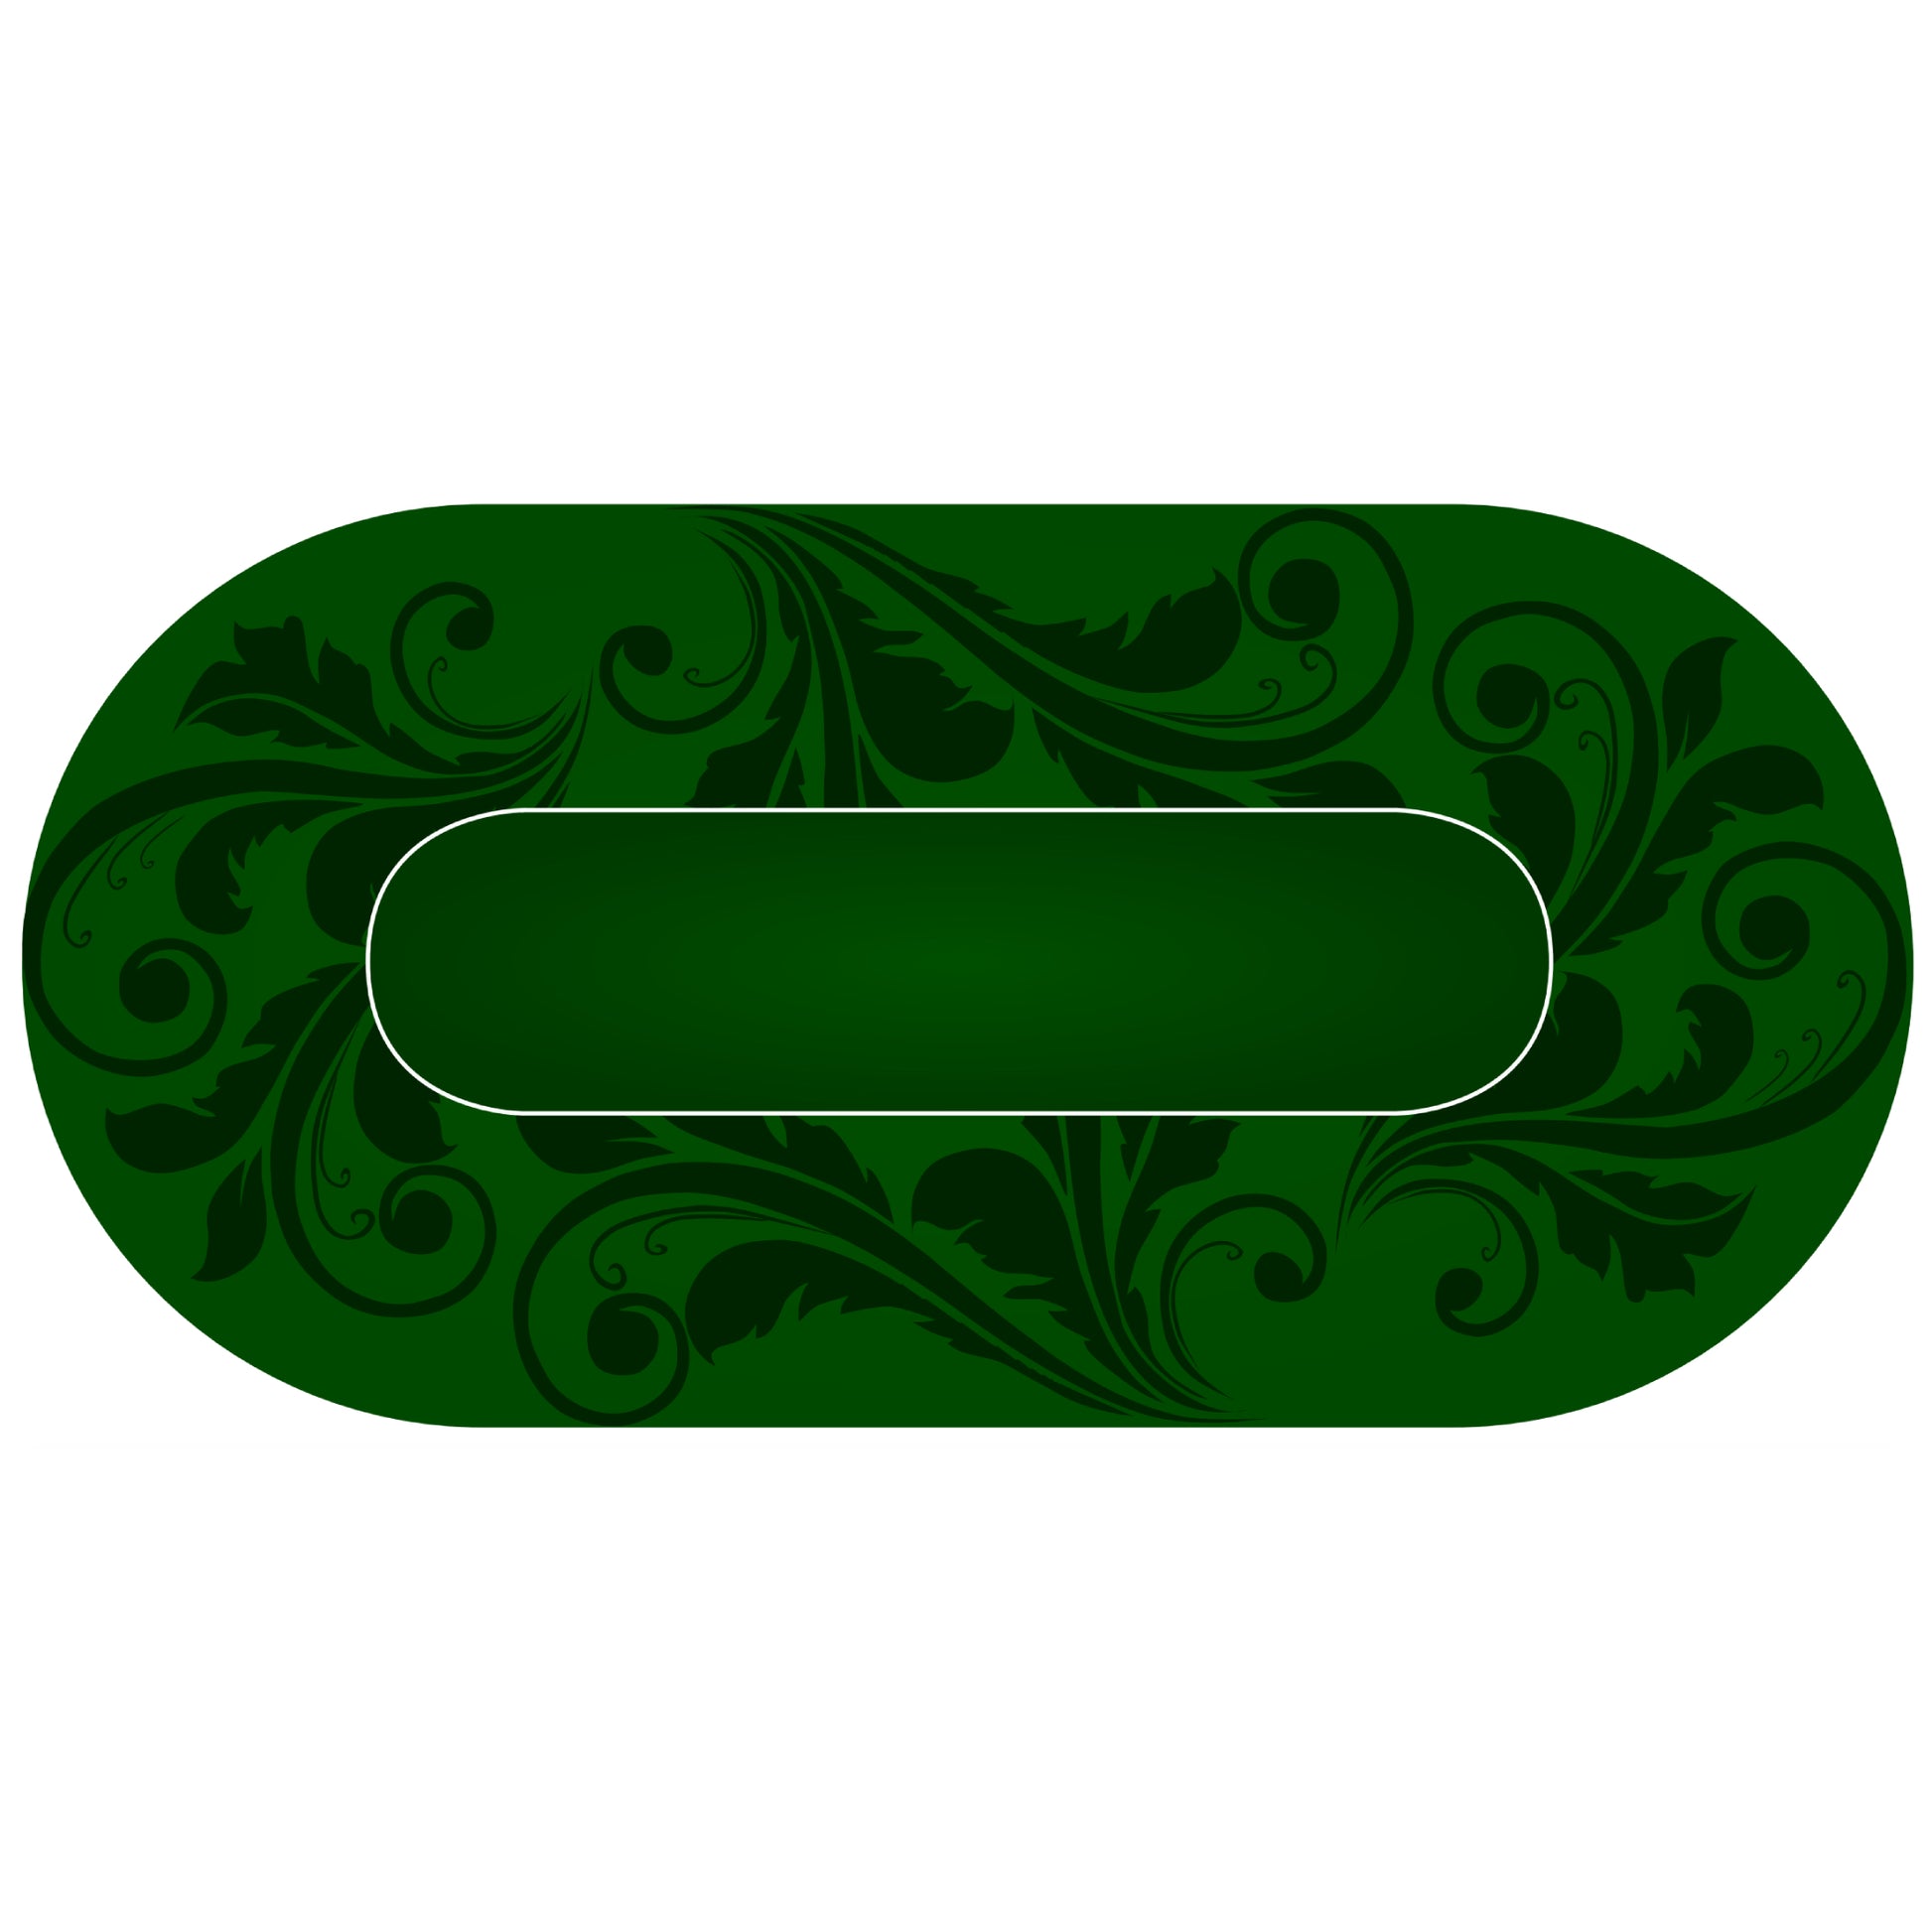 green table felt